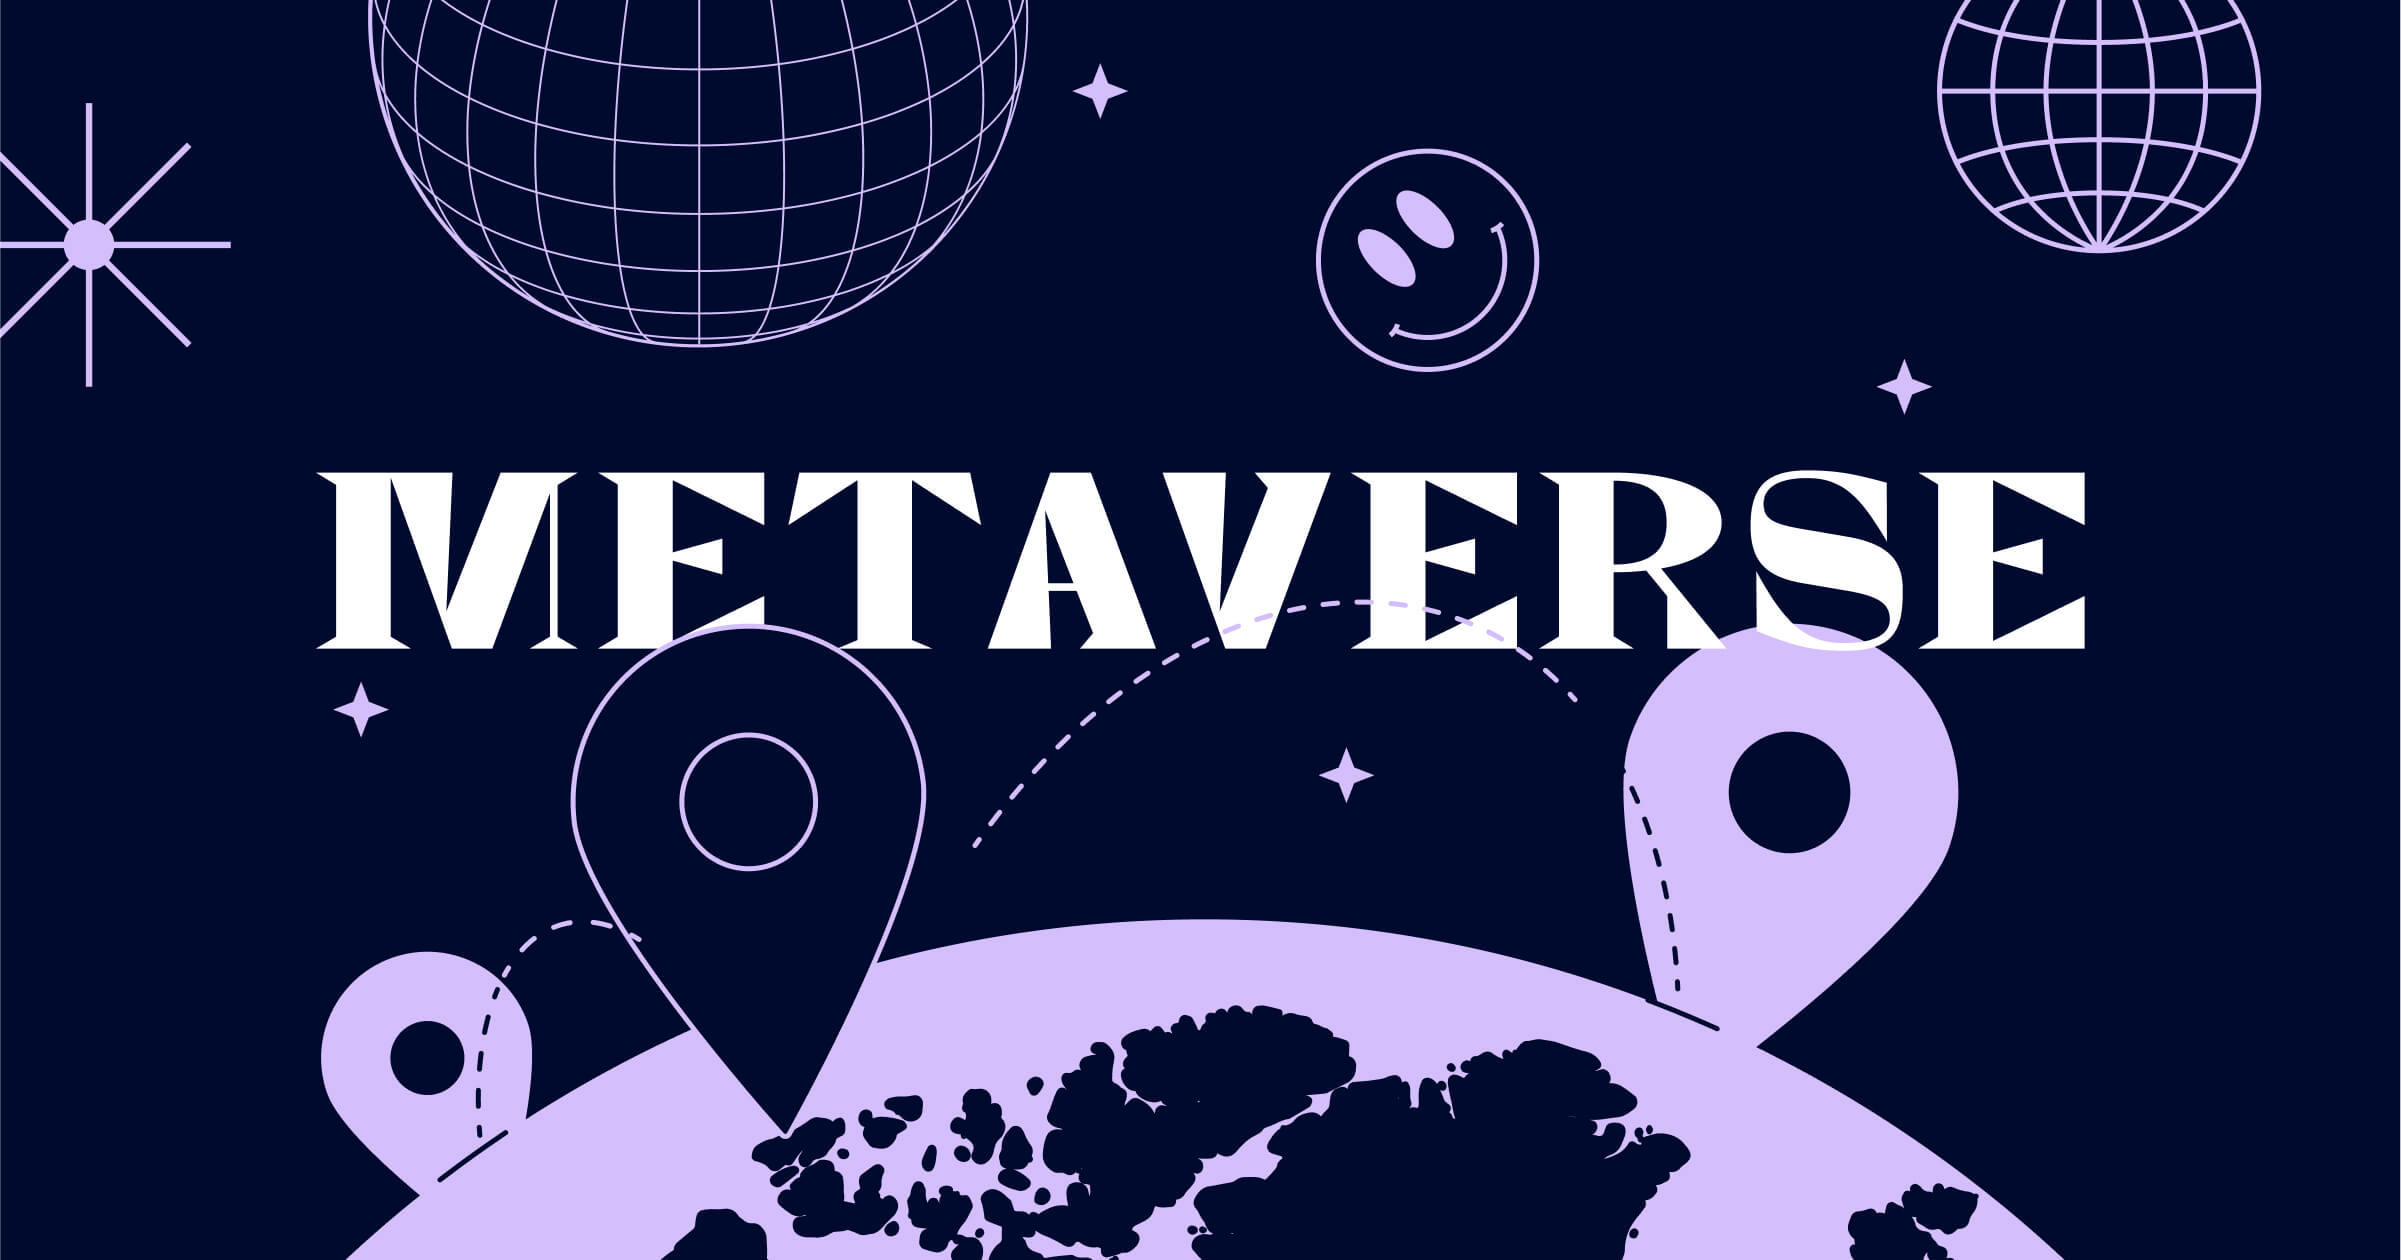 这张图片以深蓝色调为背景，展示了“METAVERSE”字样，周围有地球、位置标记和星球，体现了元宇宙的概念和虚拟空间的主题。